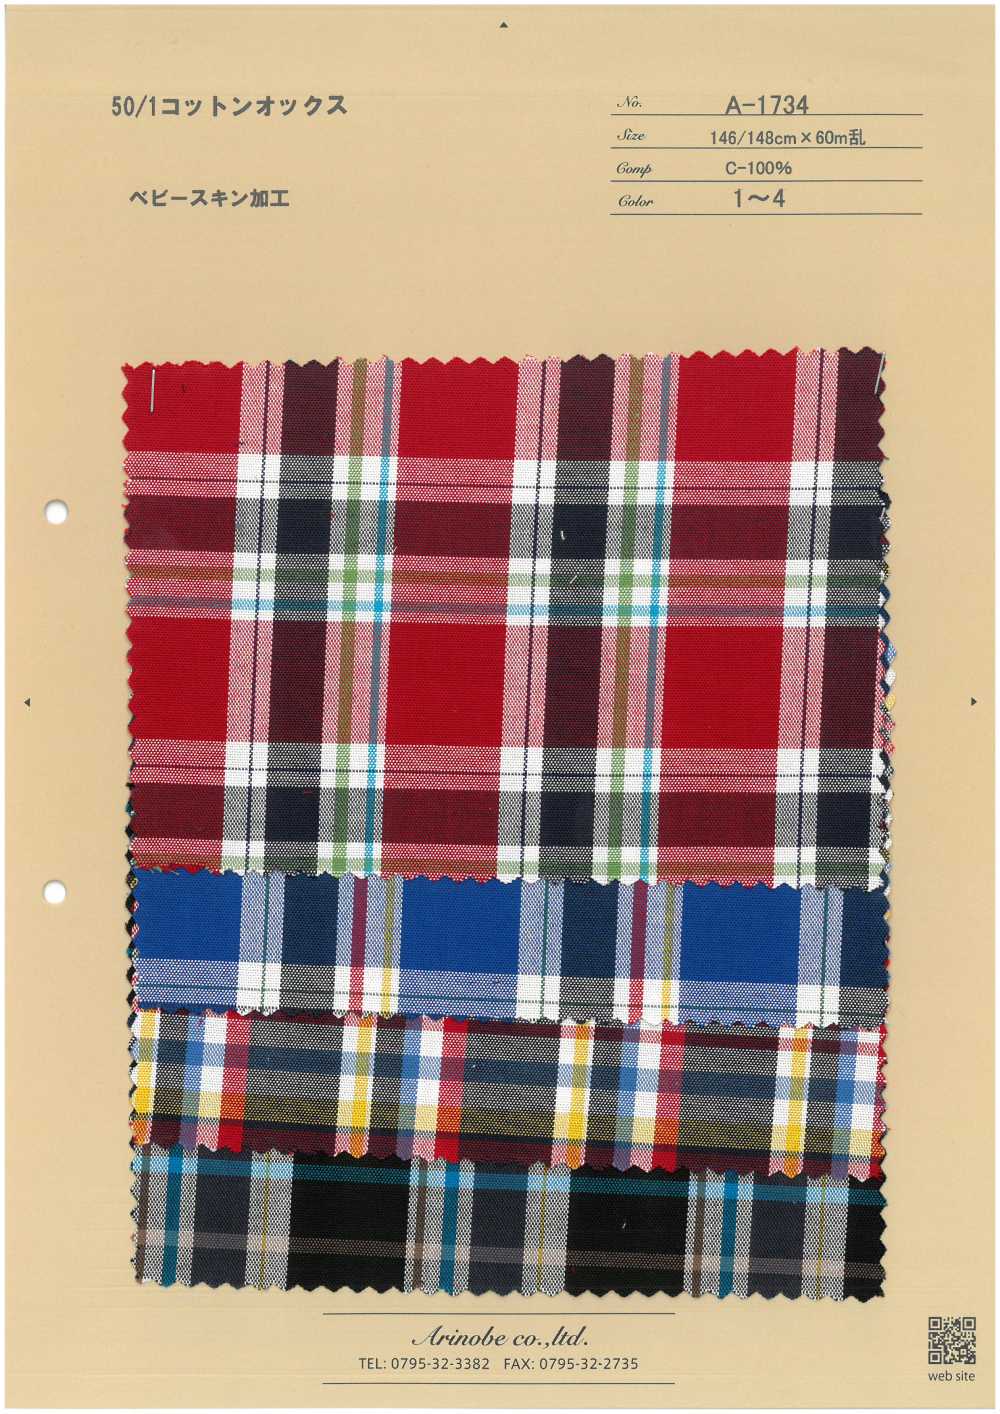 A-1734 Oxford 50/1 En Coton[Fabrication De Textile] ARINOBE CO., LTD.